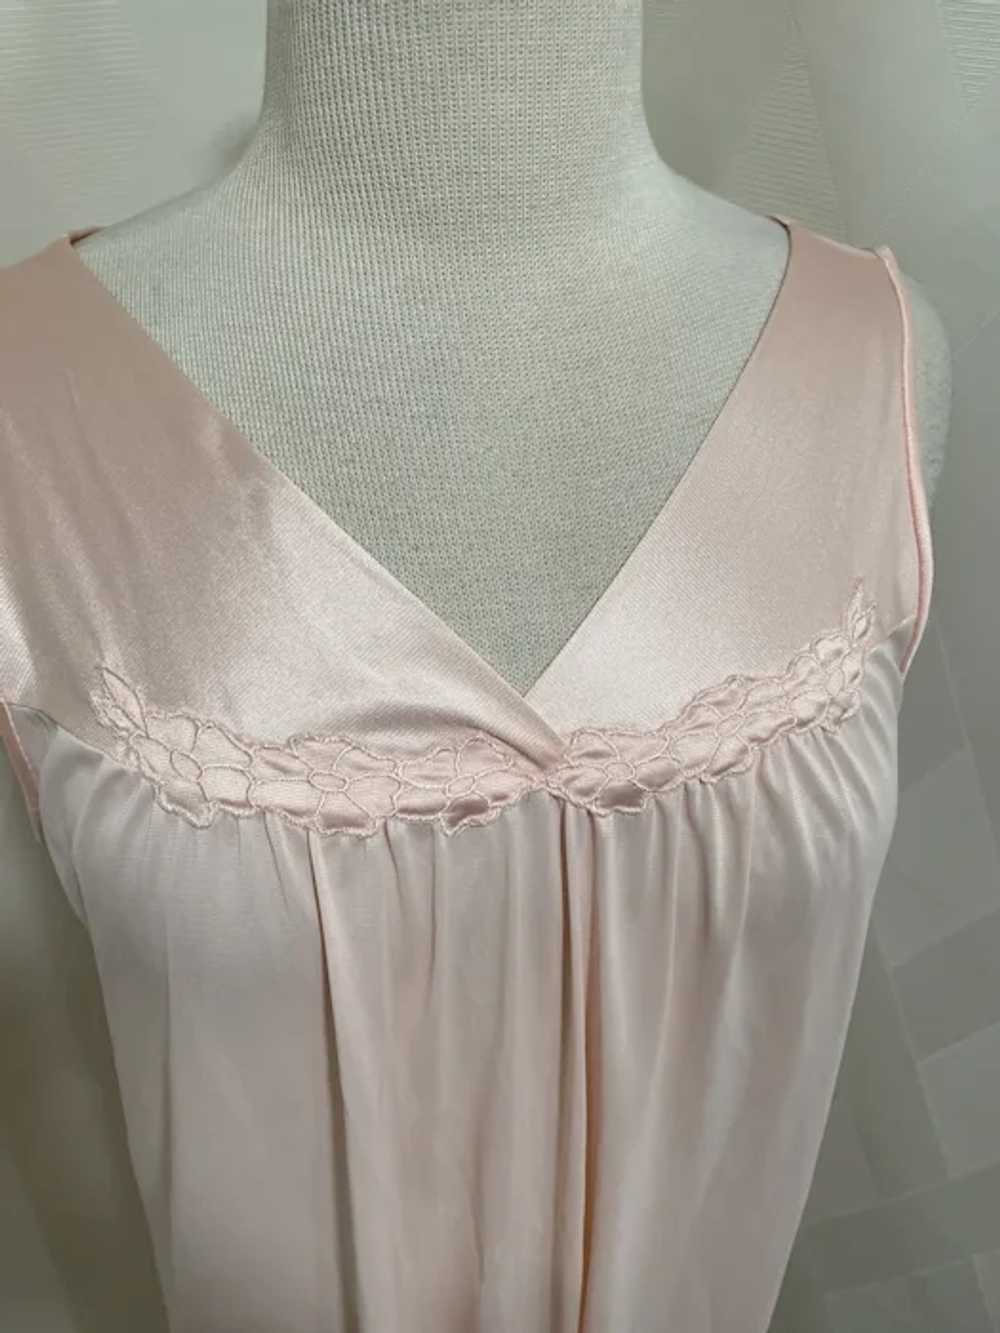 Vintage 1980s Vanity Fair Nightgown - image 4